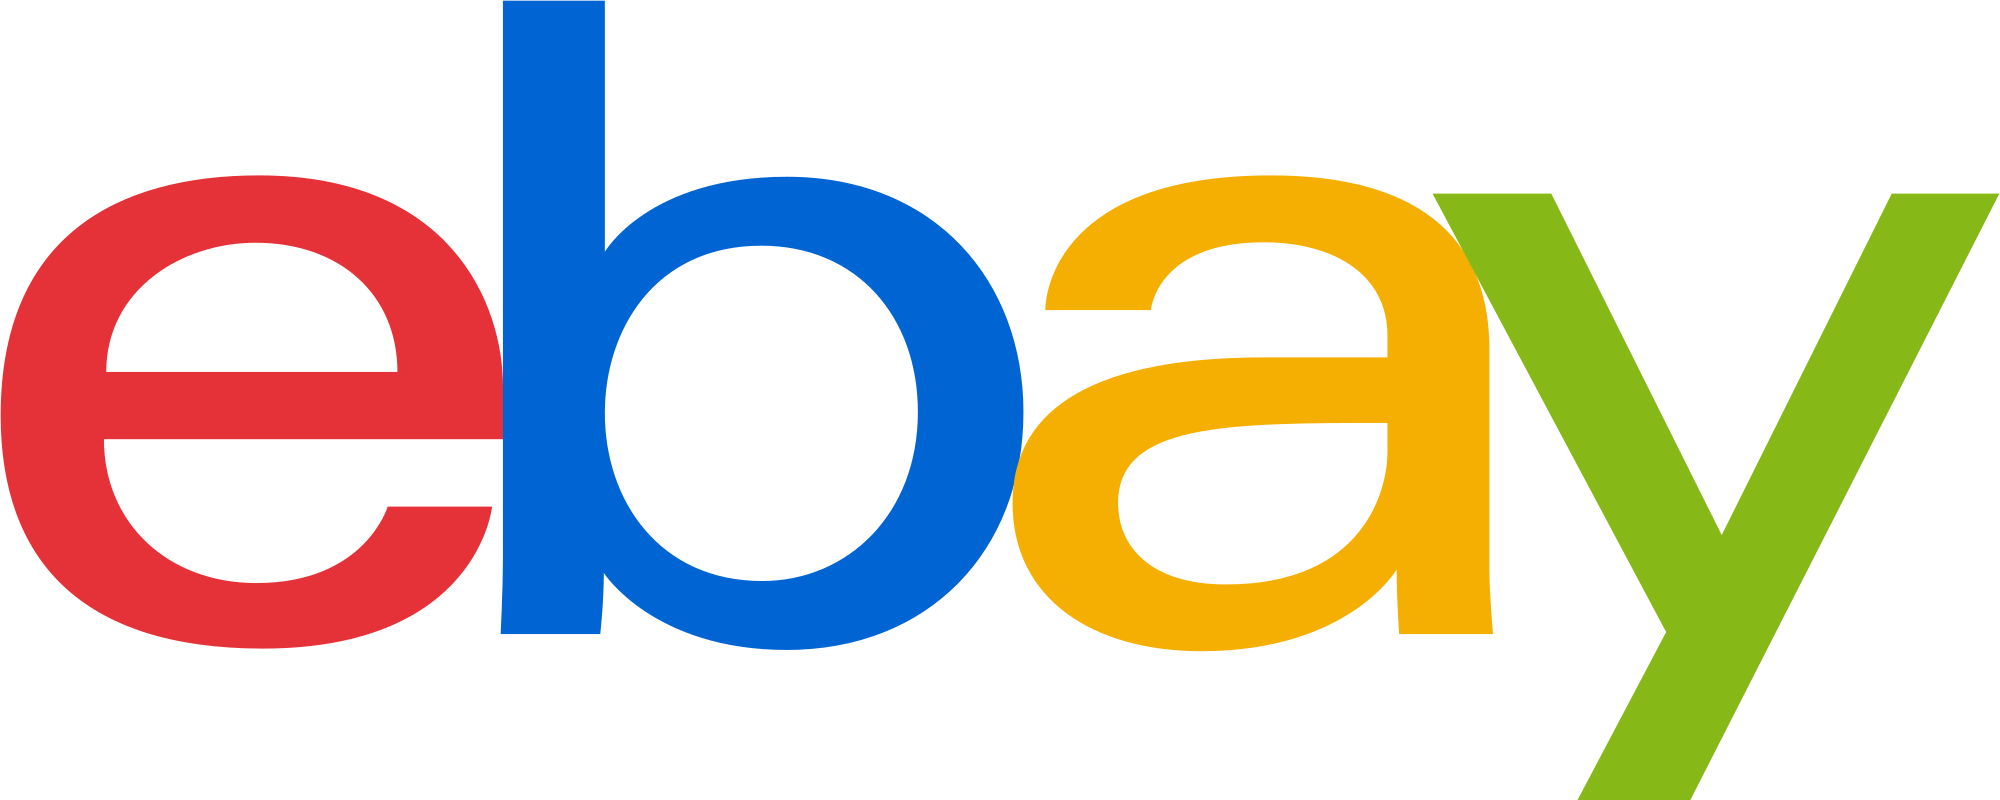 eBay Logo - File:EBay logo.svg - Wikimedia Commons